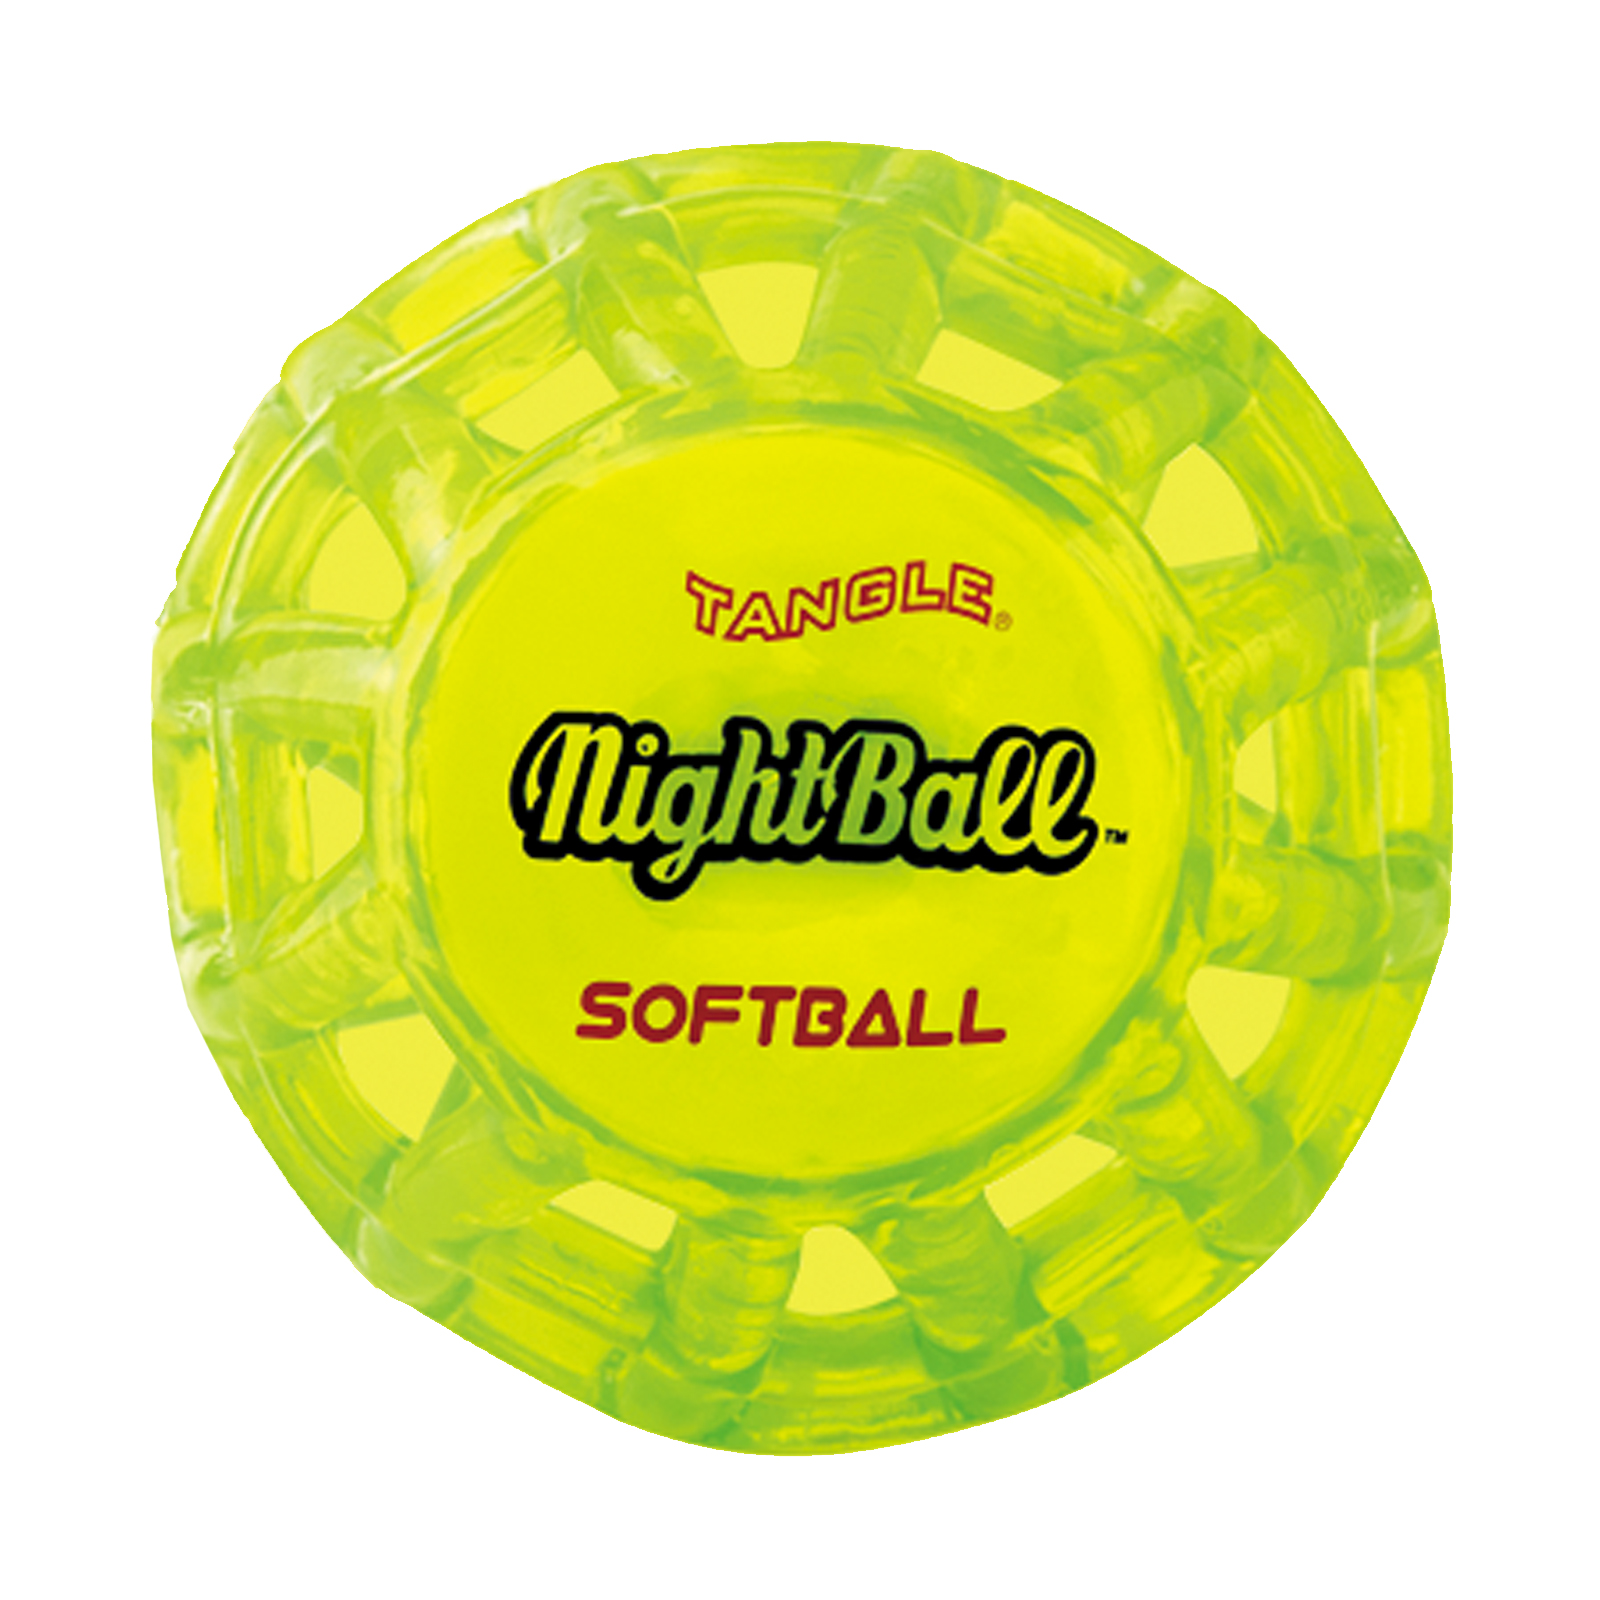 tangle NightBall Softball